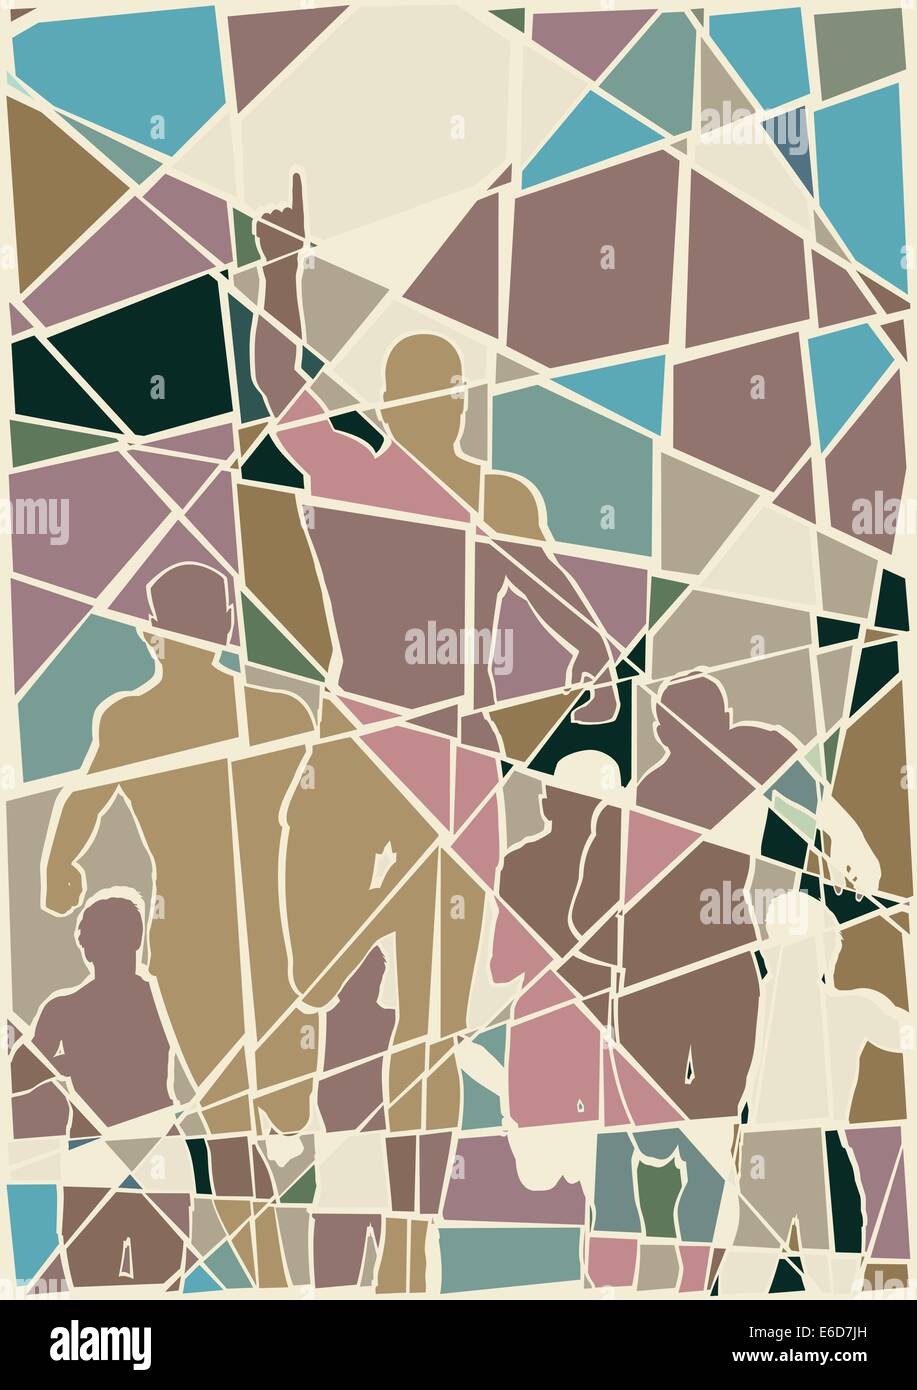 Editierbare Vektorgrafik buntes Mosaik eines Mannes feiert ein Rennen zu gewinnen Stock Vektor